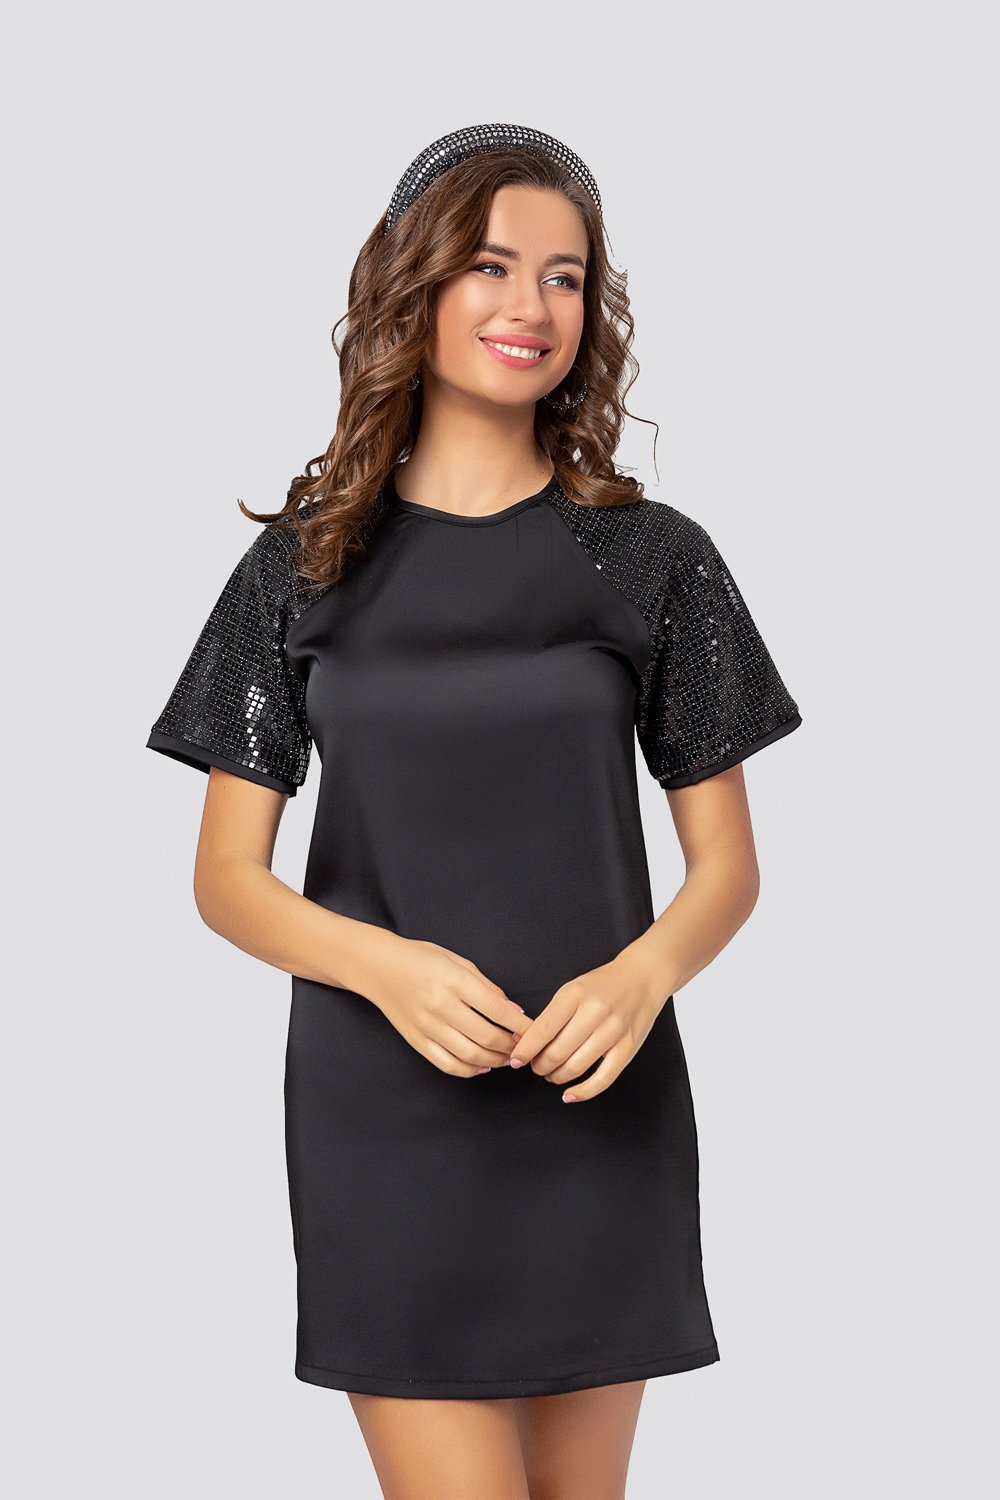 Black dress with a shiny sleeve